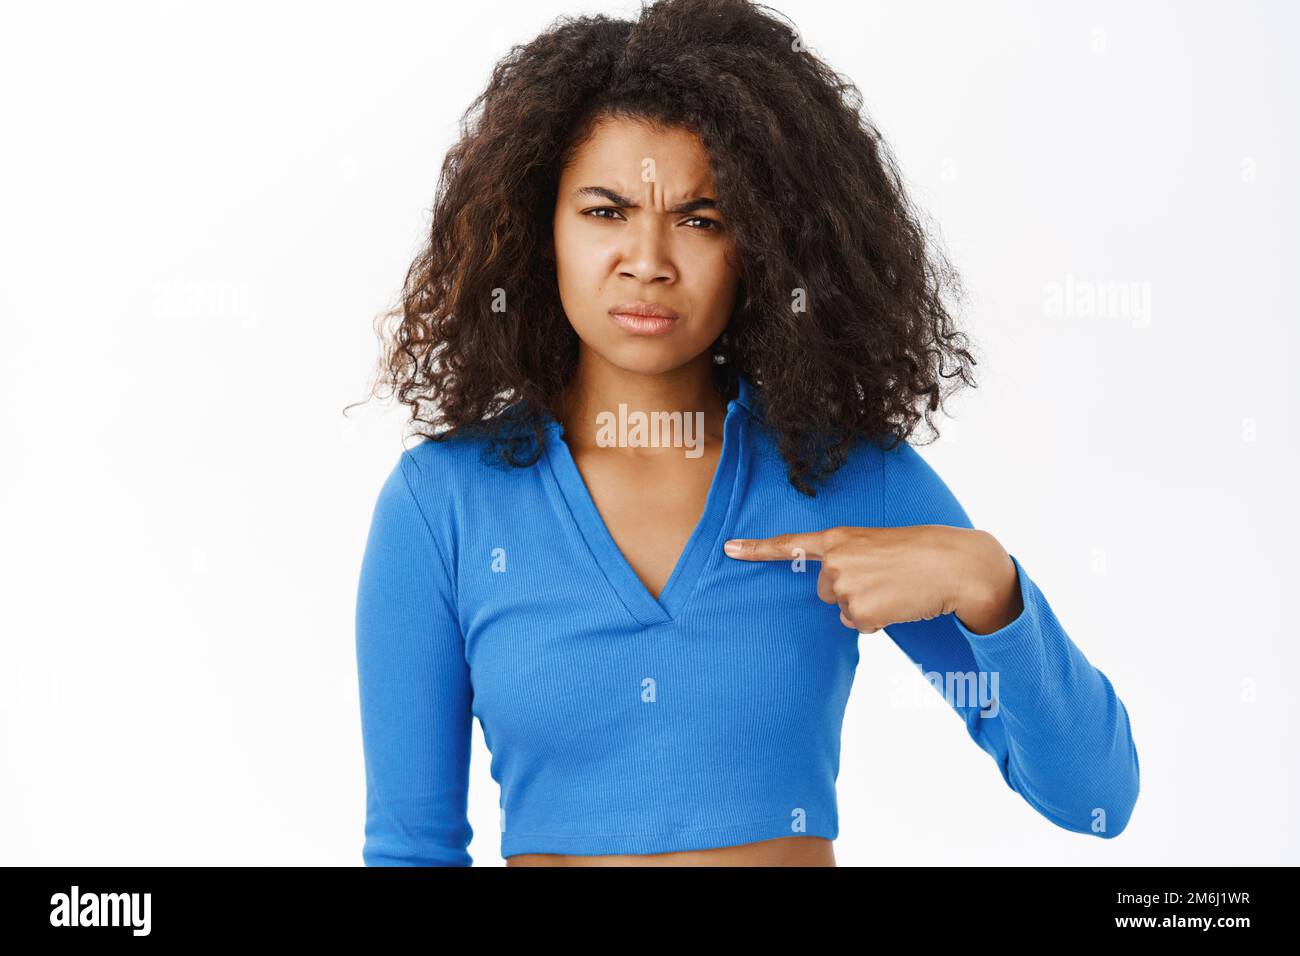 Ragazza nera arrabbiata, indicando se stessa e accigliandosi con il volto deluso, in piedi su sfondo bianco Foto Stock